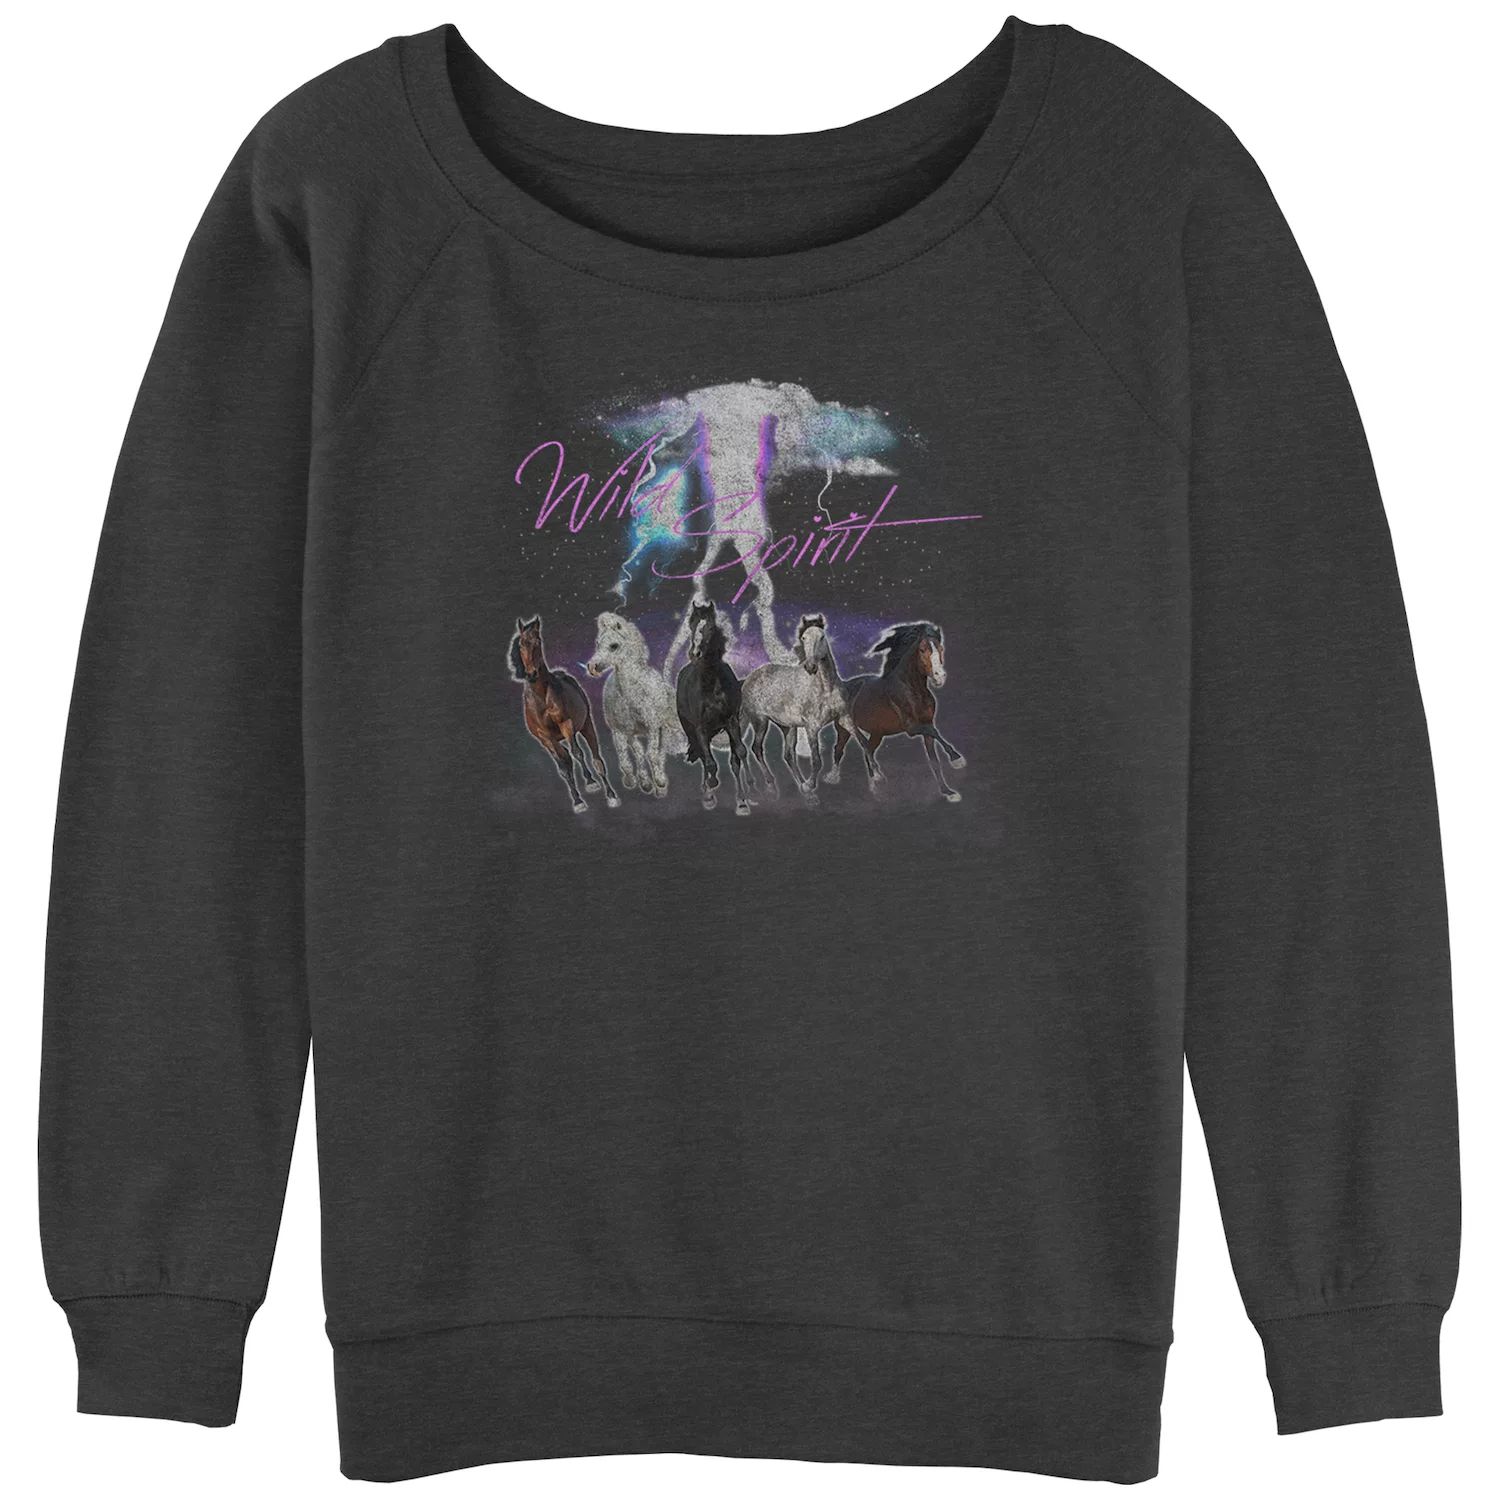 Махровый пуловер с напуском Wild Spirit Horses для юниоров